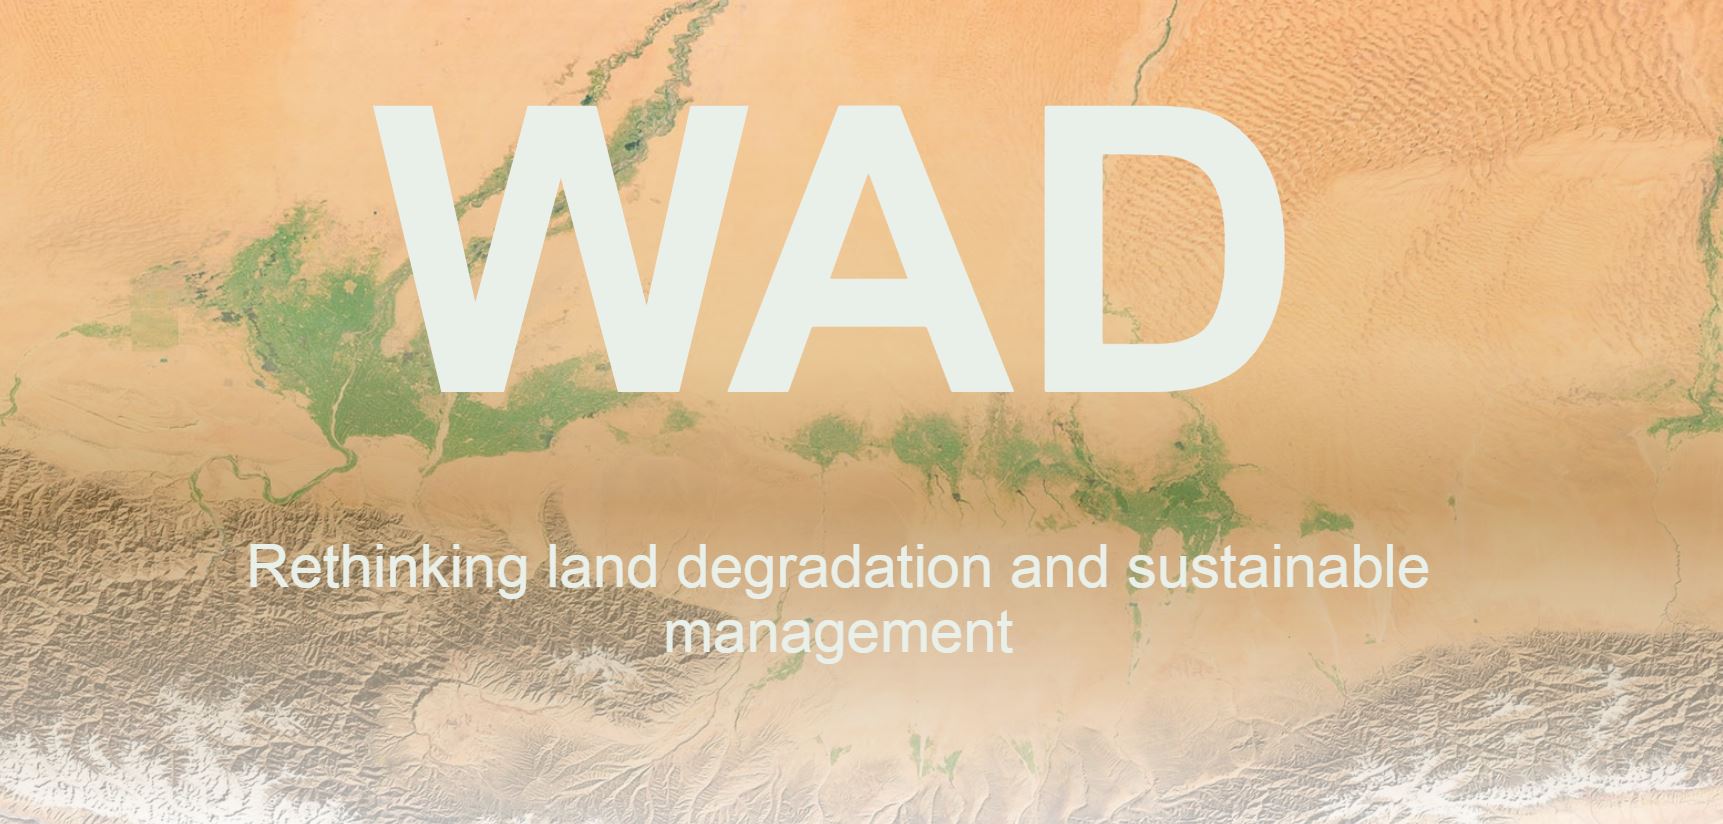 Atlas Mundial de la desertificación